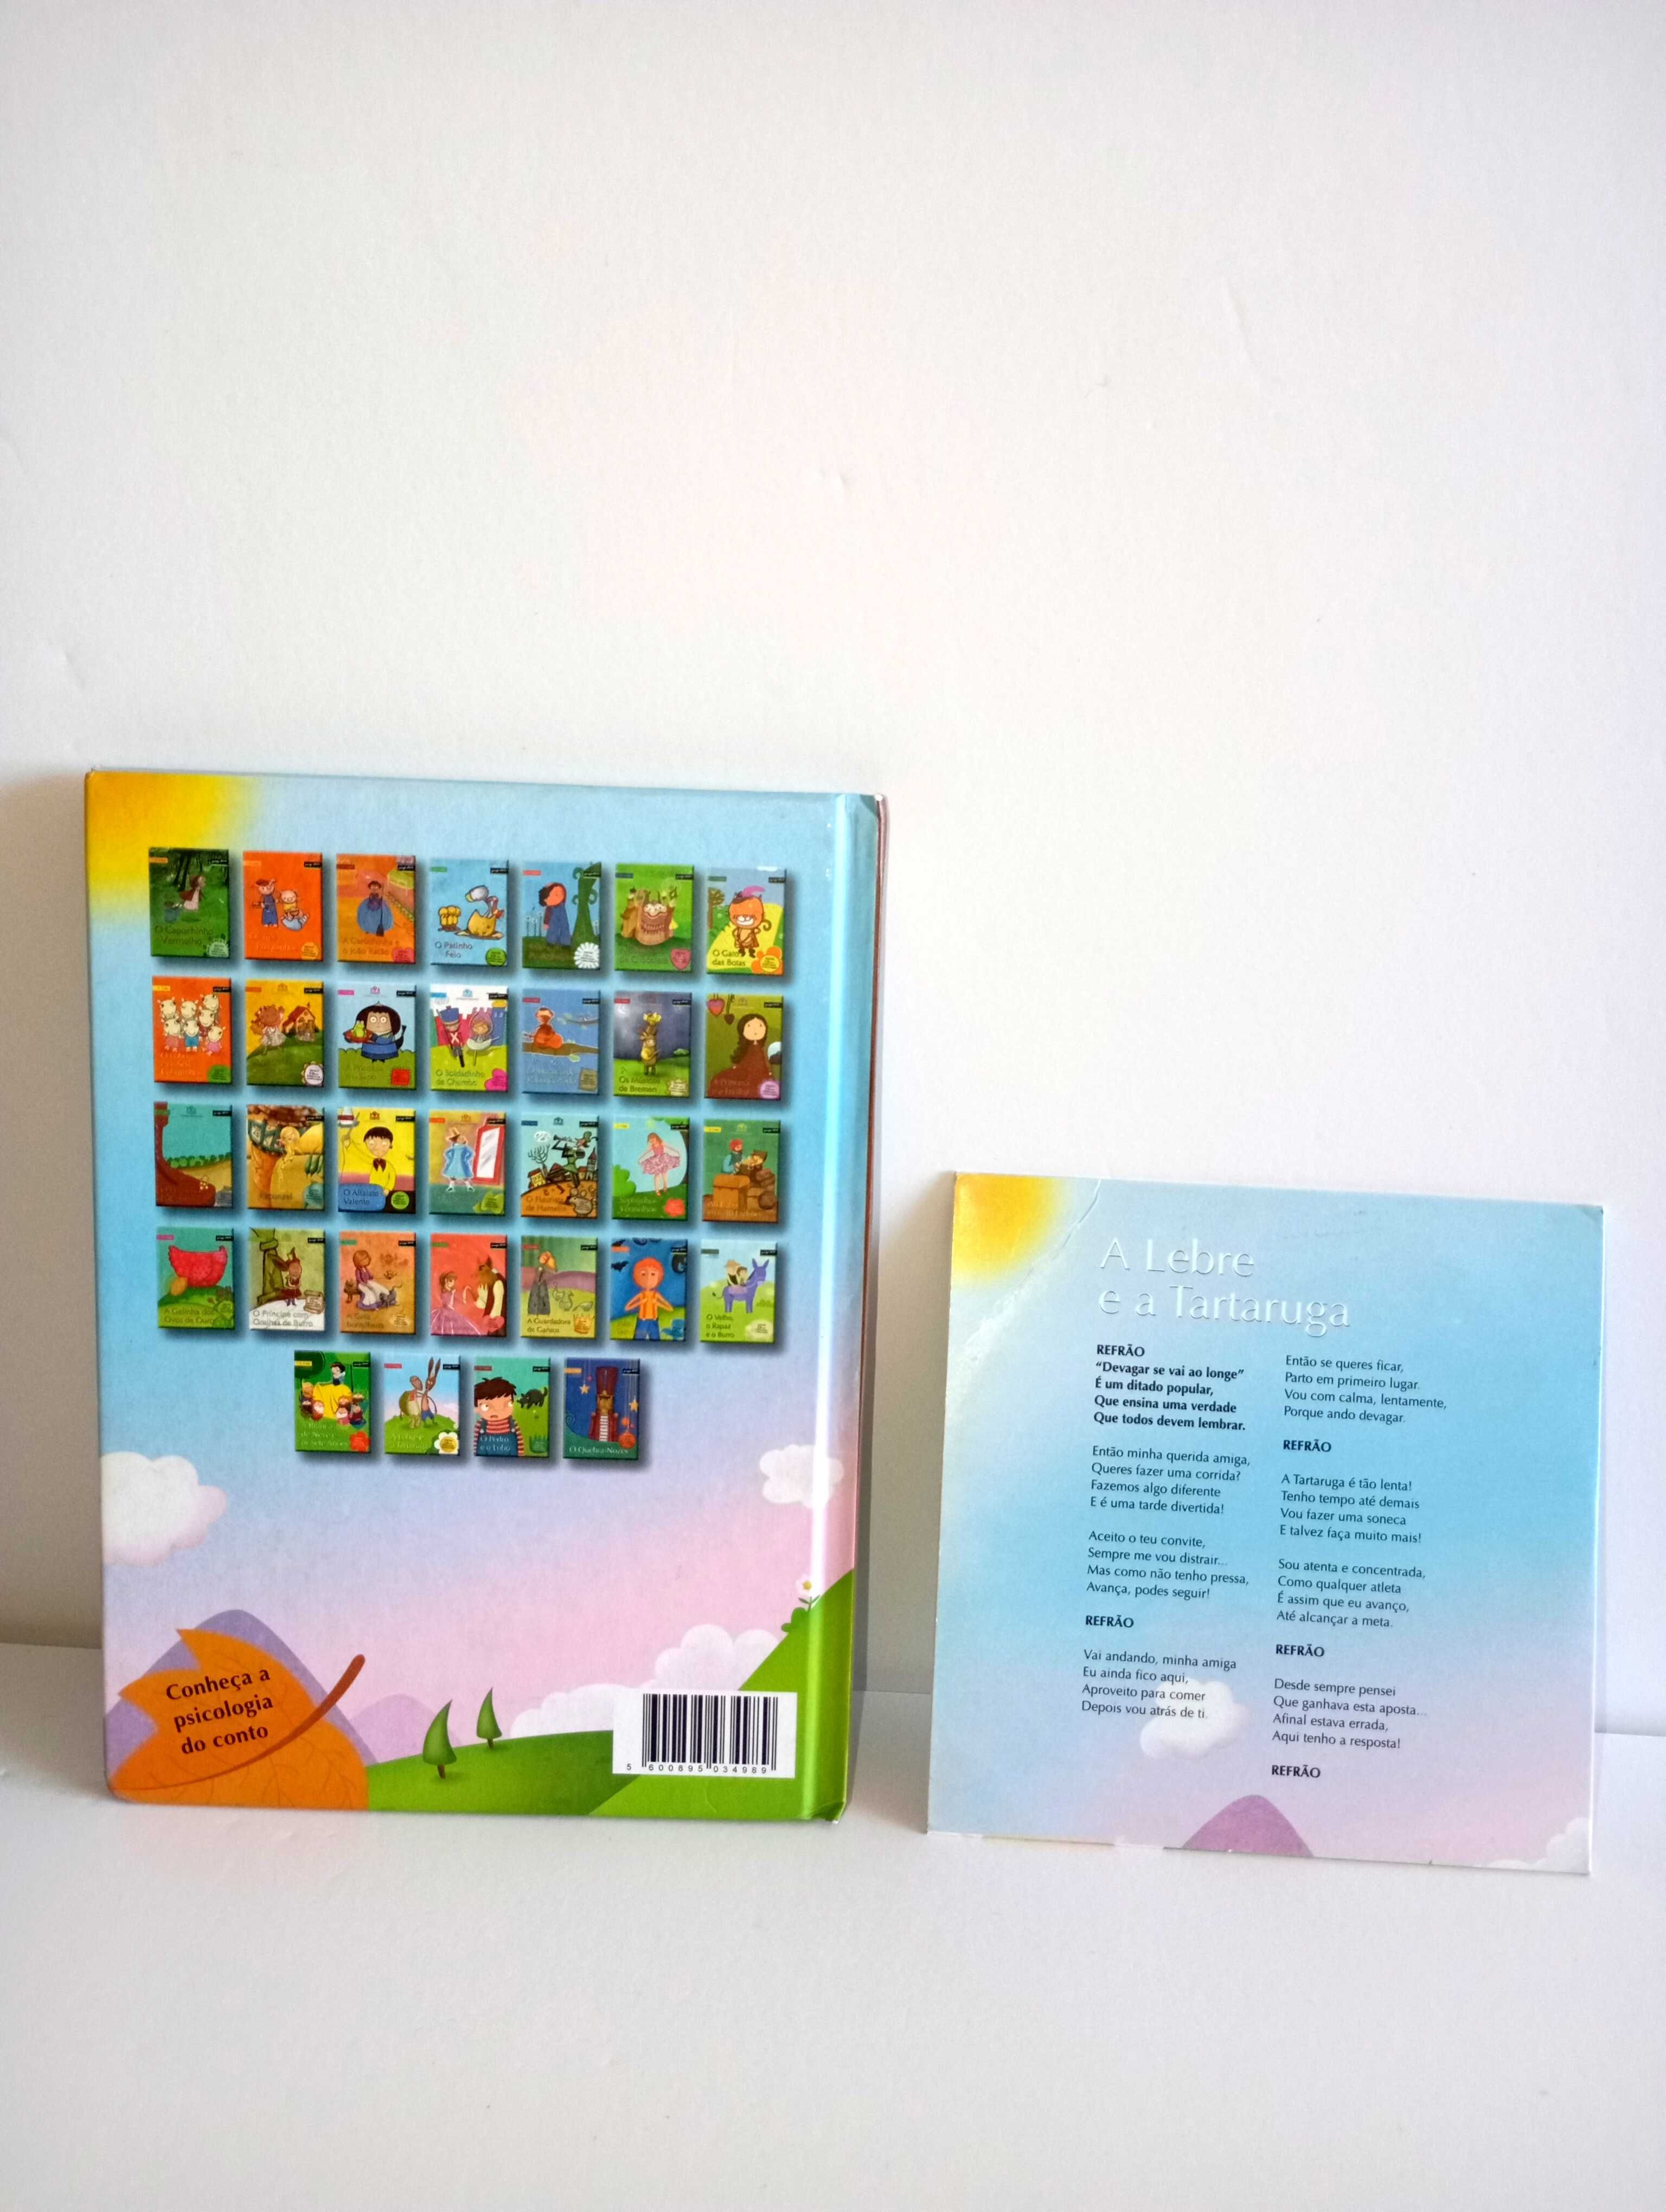 A Lebre e a Tartaruga - Livro + CD - Coleção Histórias de encantar